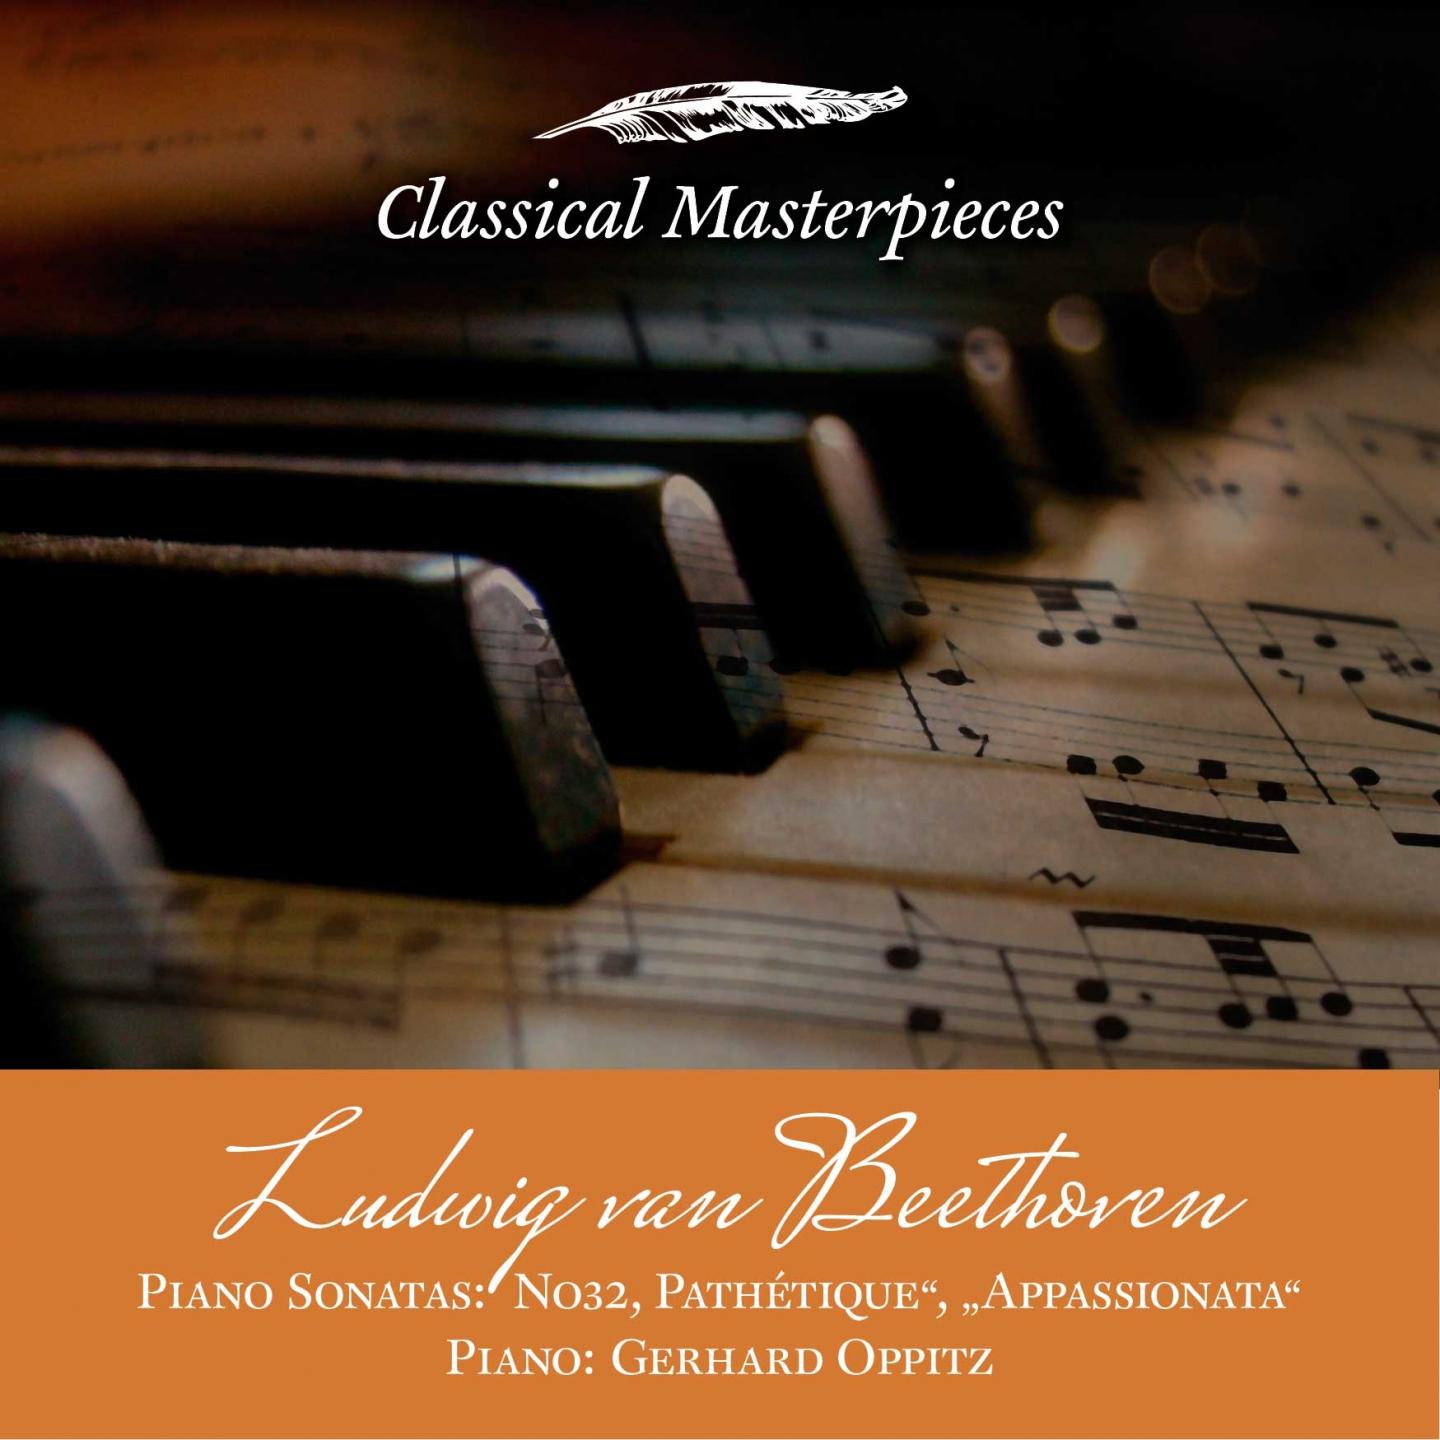 Piano Sonata No. 8 in C Minor, op. 13 "Pathétique":I. Grave - Allegro molto e con brio